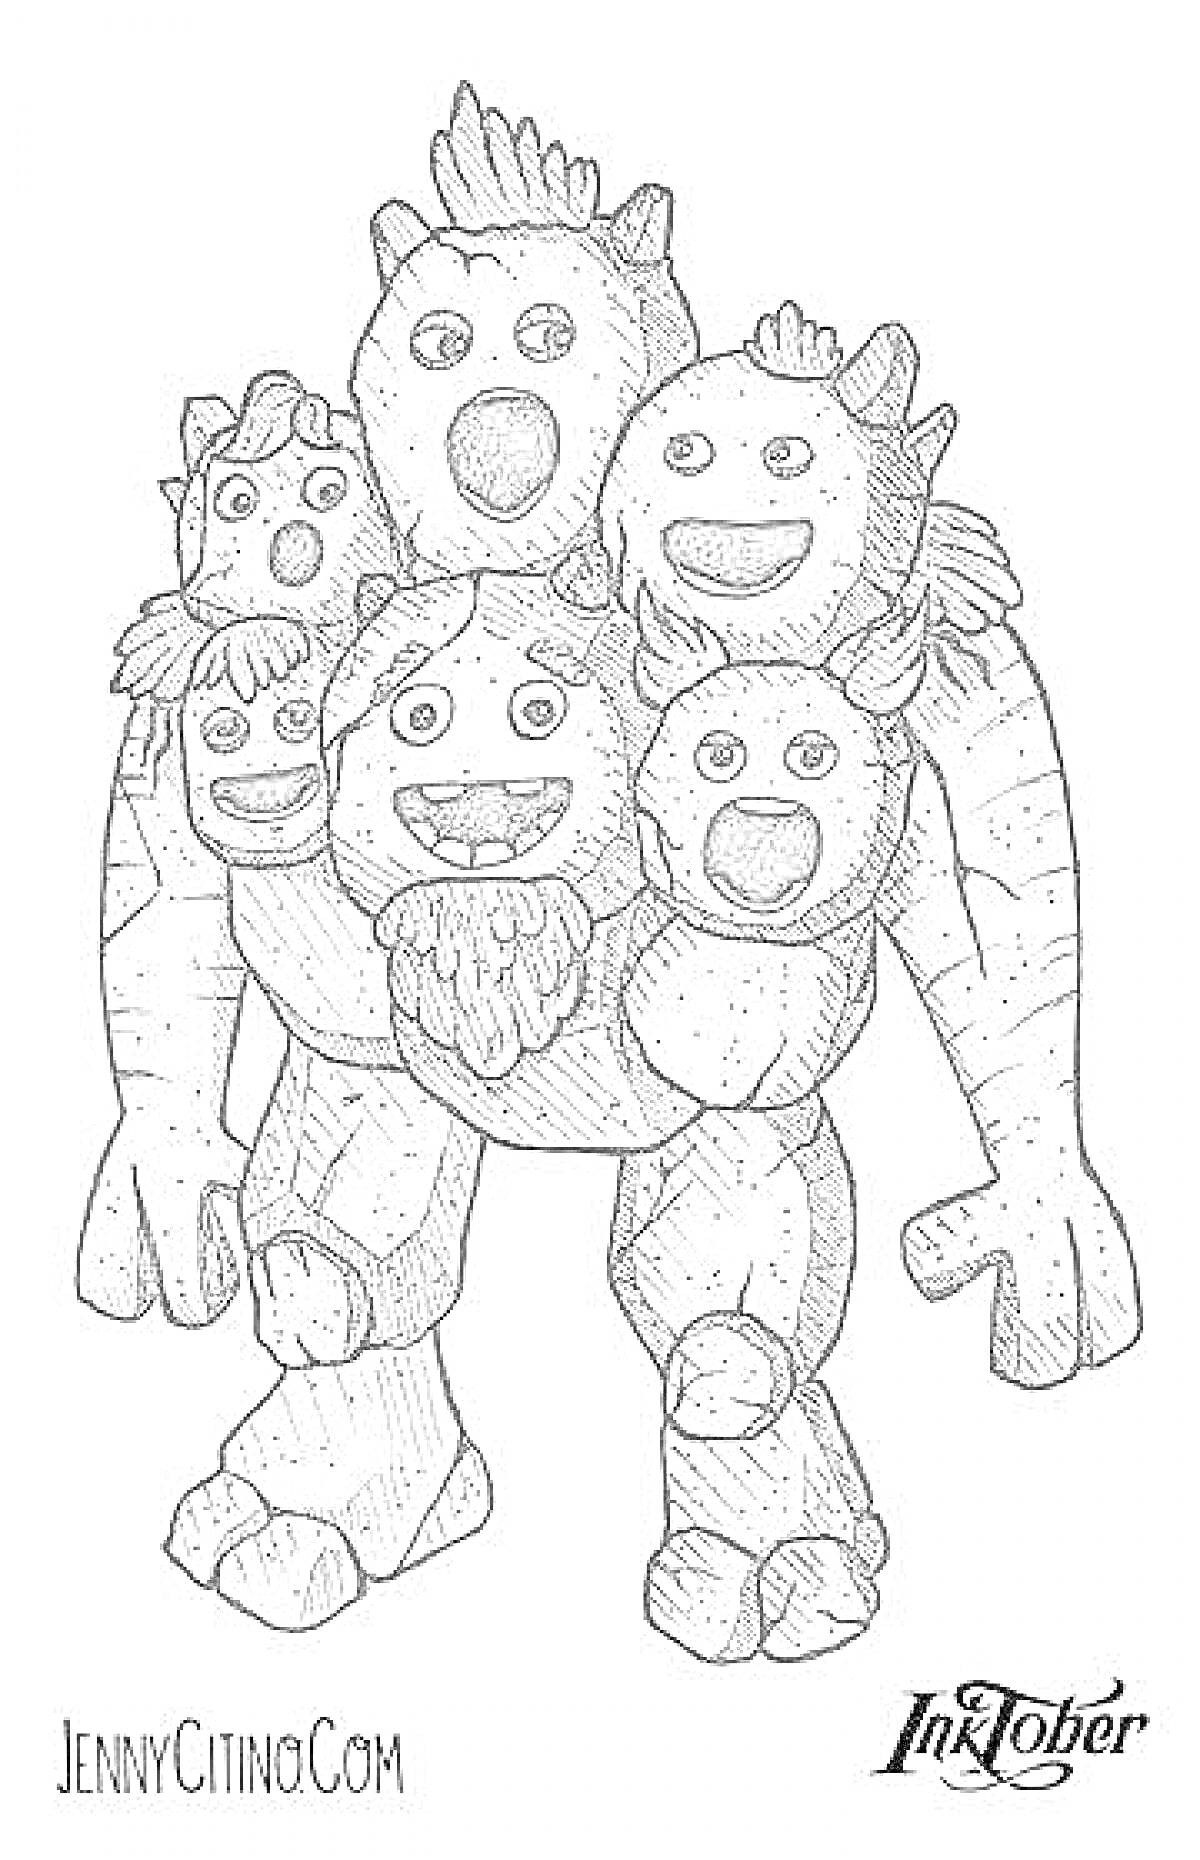 Раскраска Монстр из игры My Singing Monsters с шестью головами и четырьмя руками в грозной позе